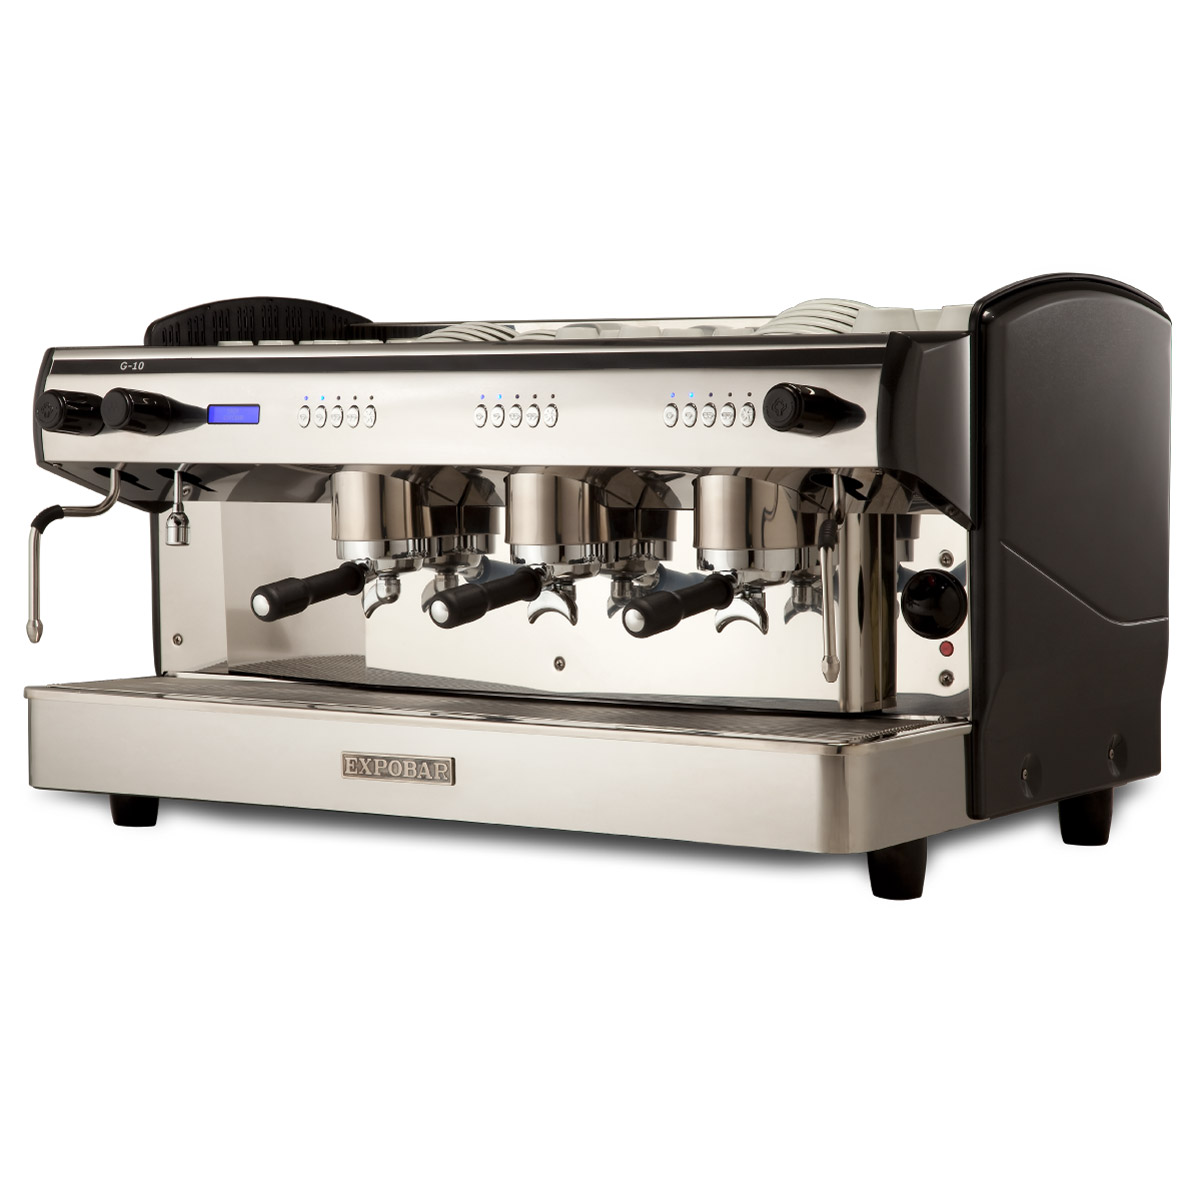 Machine à café profesionnelle 3 groupes, automatique (avec display) - noir  - Diamond - Machines à Café Professionnelles - référence AROMA/3EB -  Stock-Direct CHR